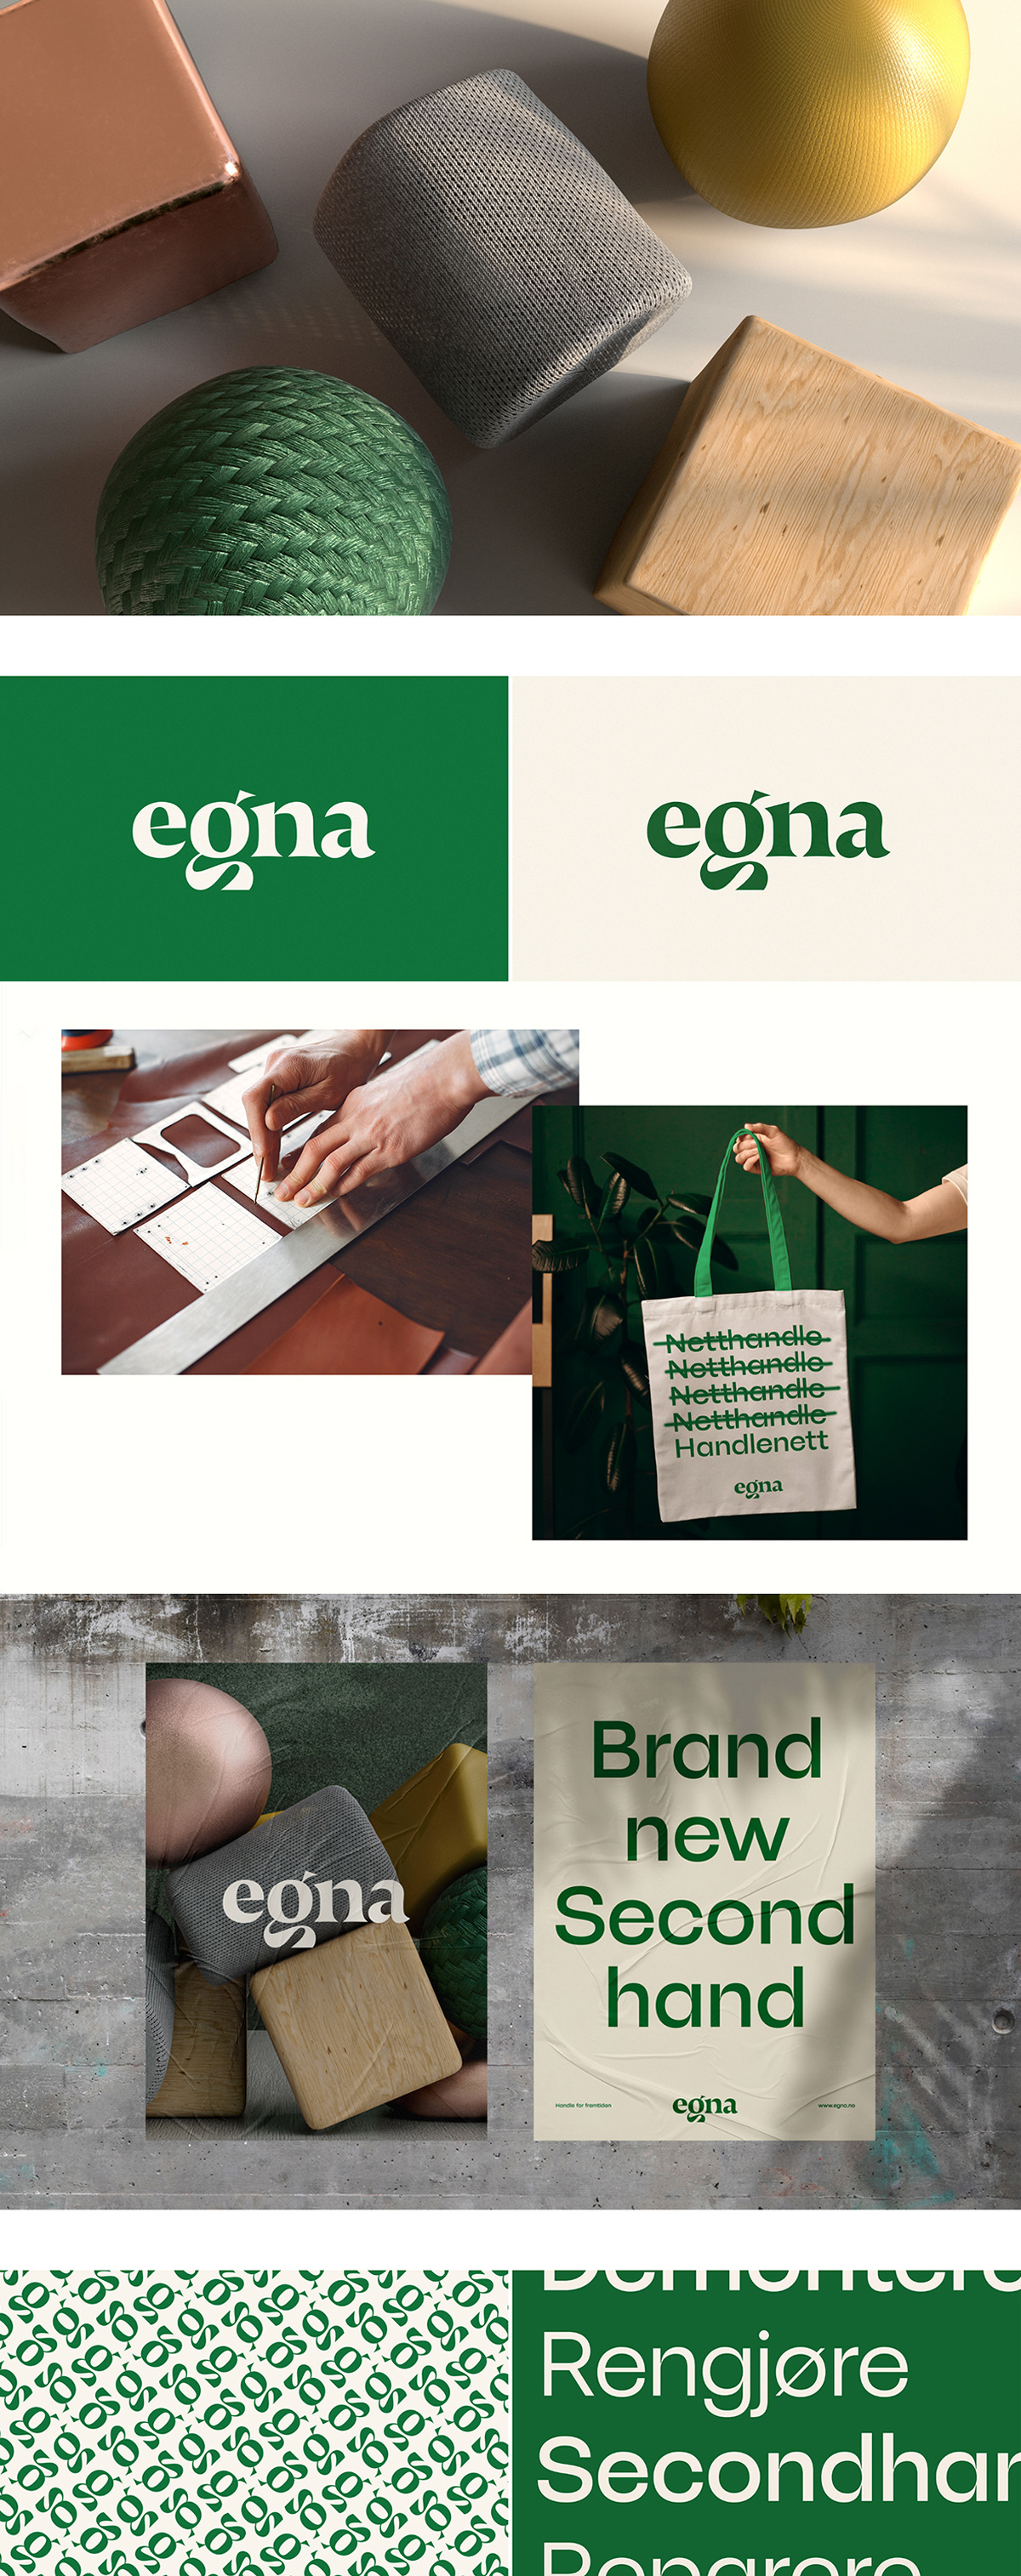 Egna — logo design for shopping mall